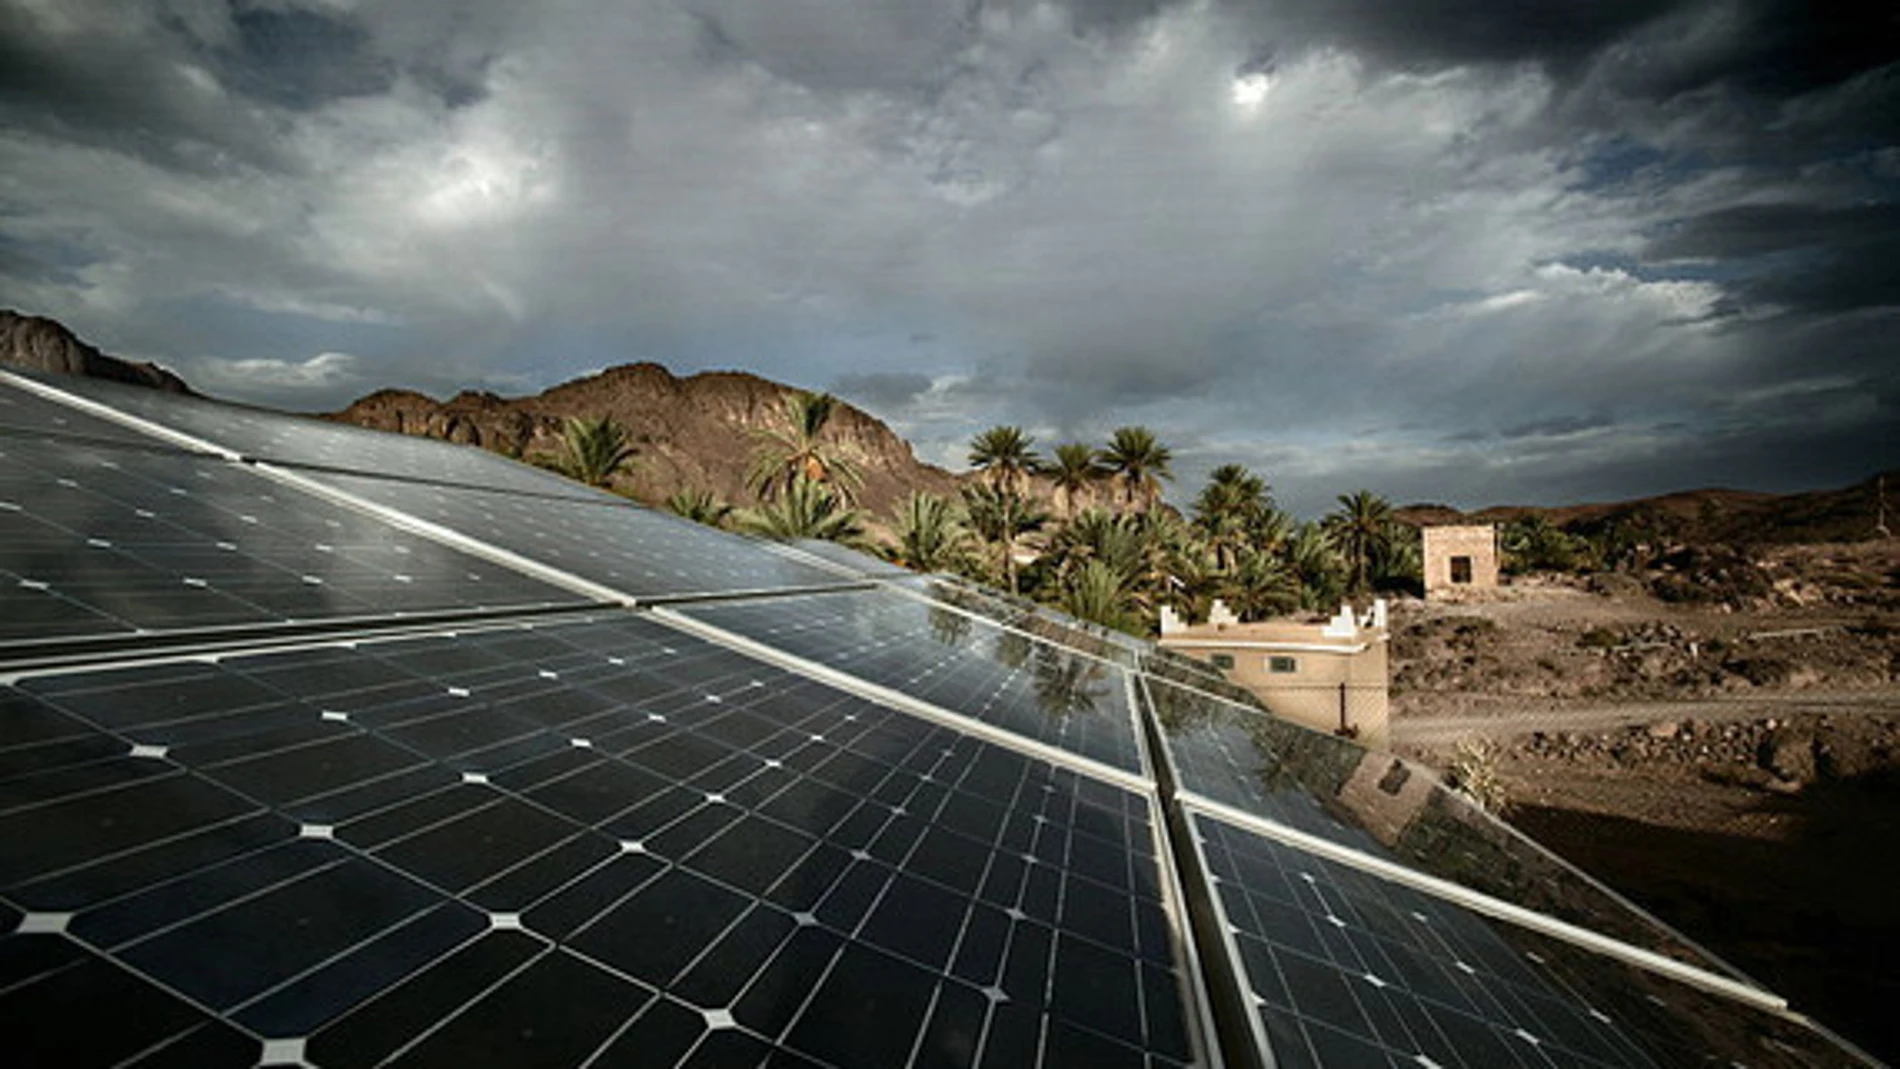 La primera instalación Fotovoltaica de Alta Concentración en Marruecos, de 30 kilovatios (kW) de potencia nominal conectada a red, fue construida en 2010 por la empresa malagueña Isofotón en la Universidad de Al Akhawayn, en la ciudad de Ifrane